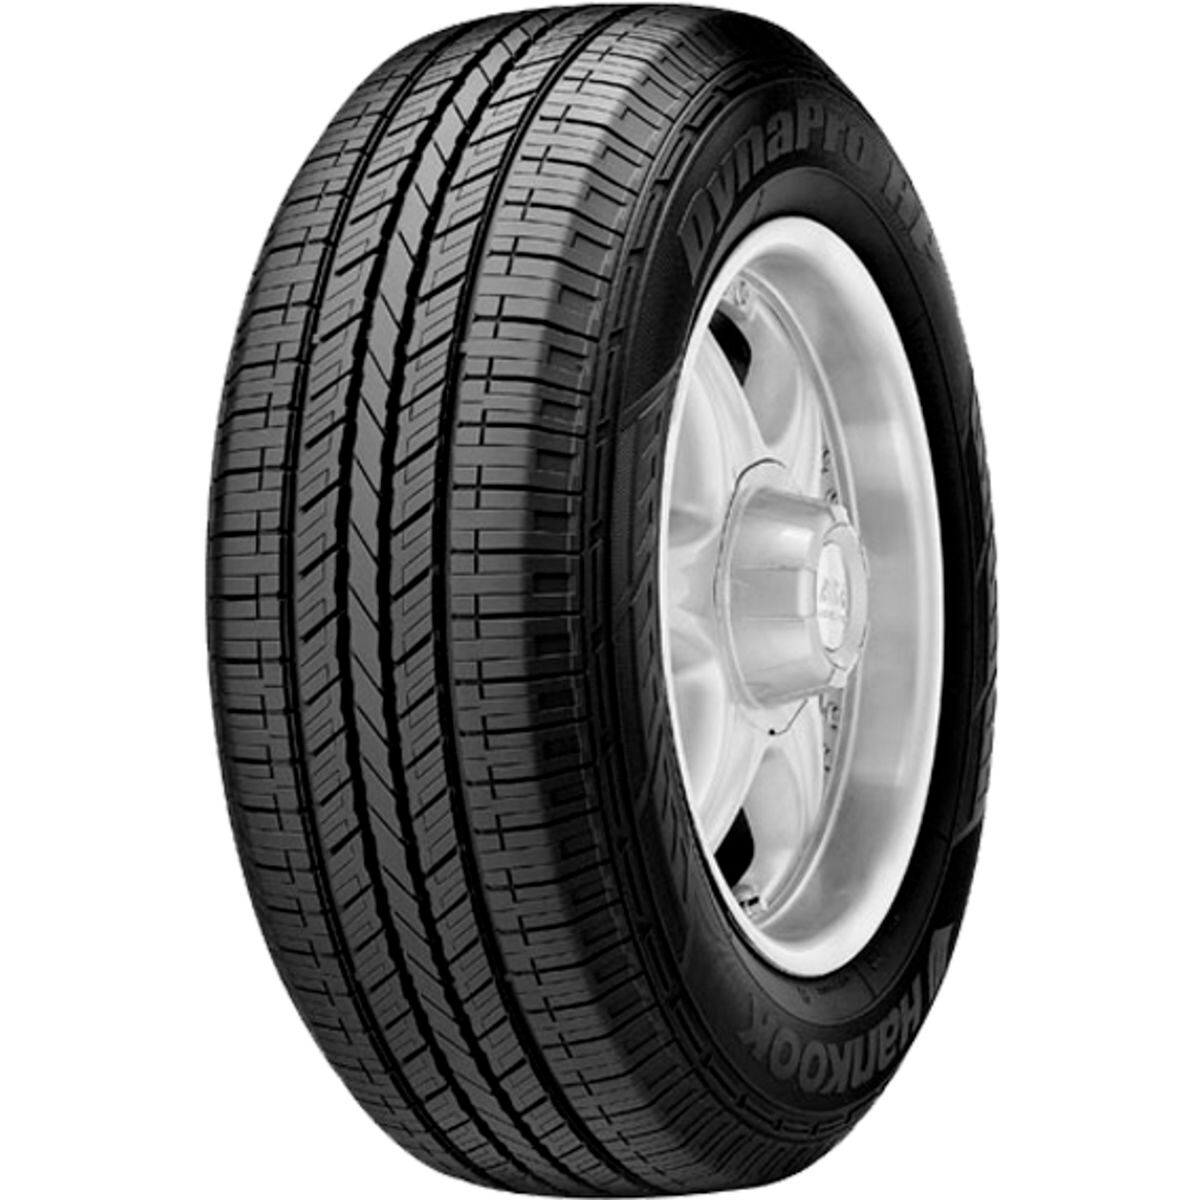 Neumáticos de verano HANKOOK Dynapro HP RA23 225/65R16 XL 104T